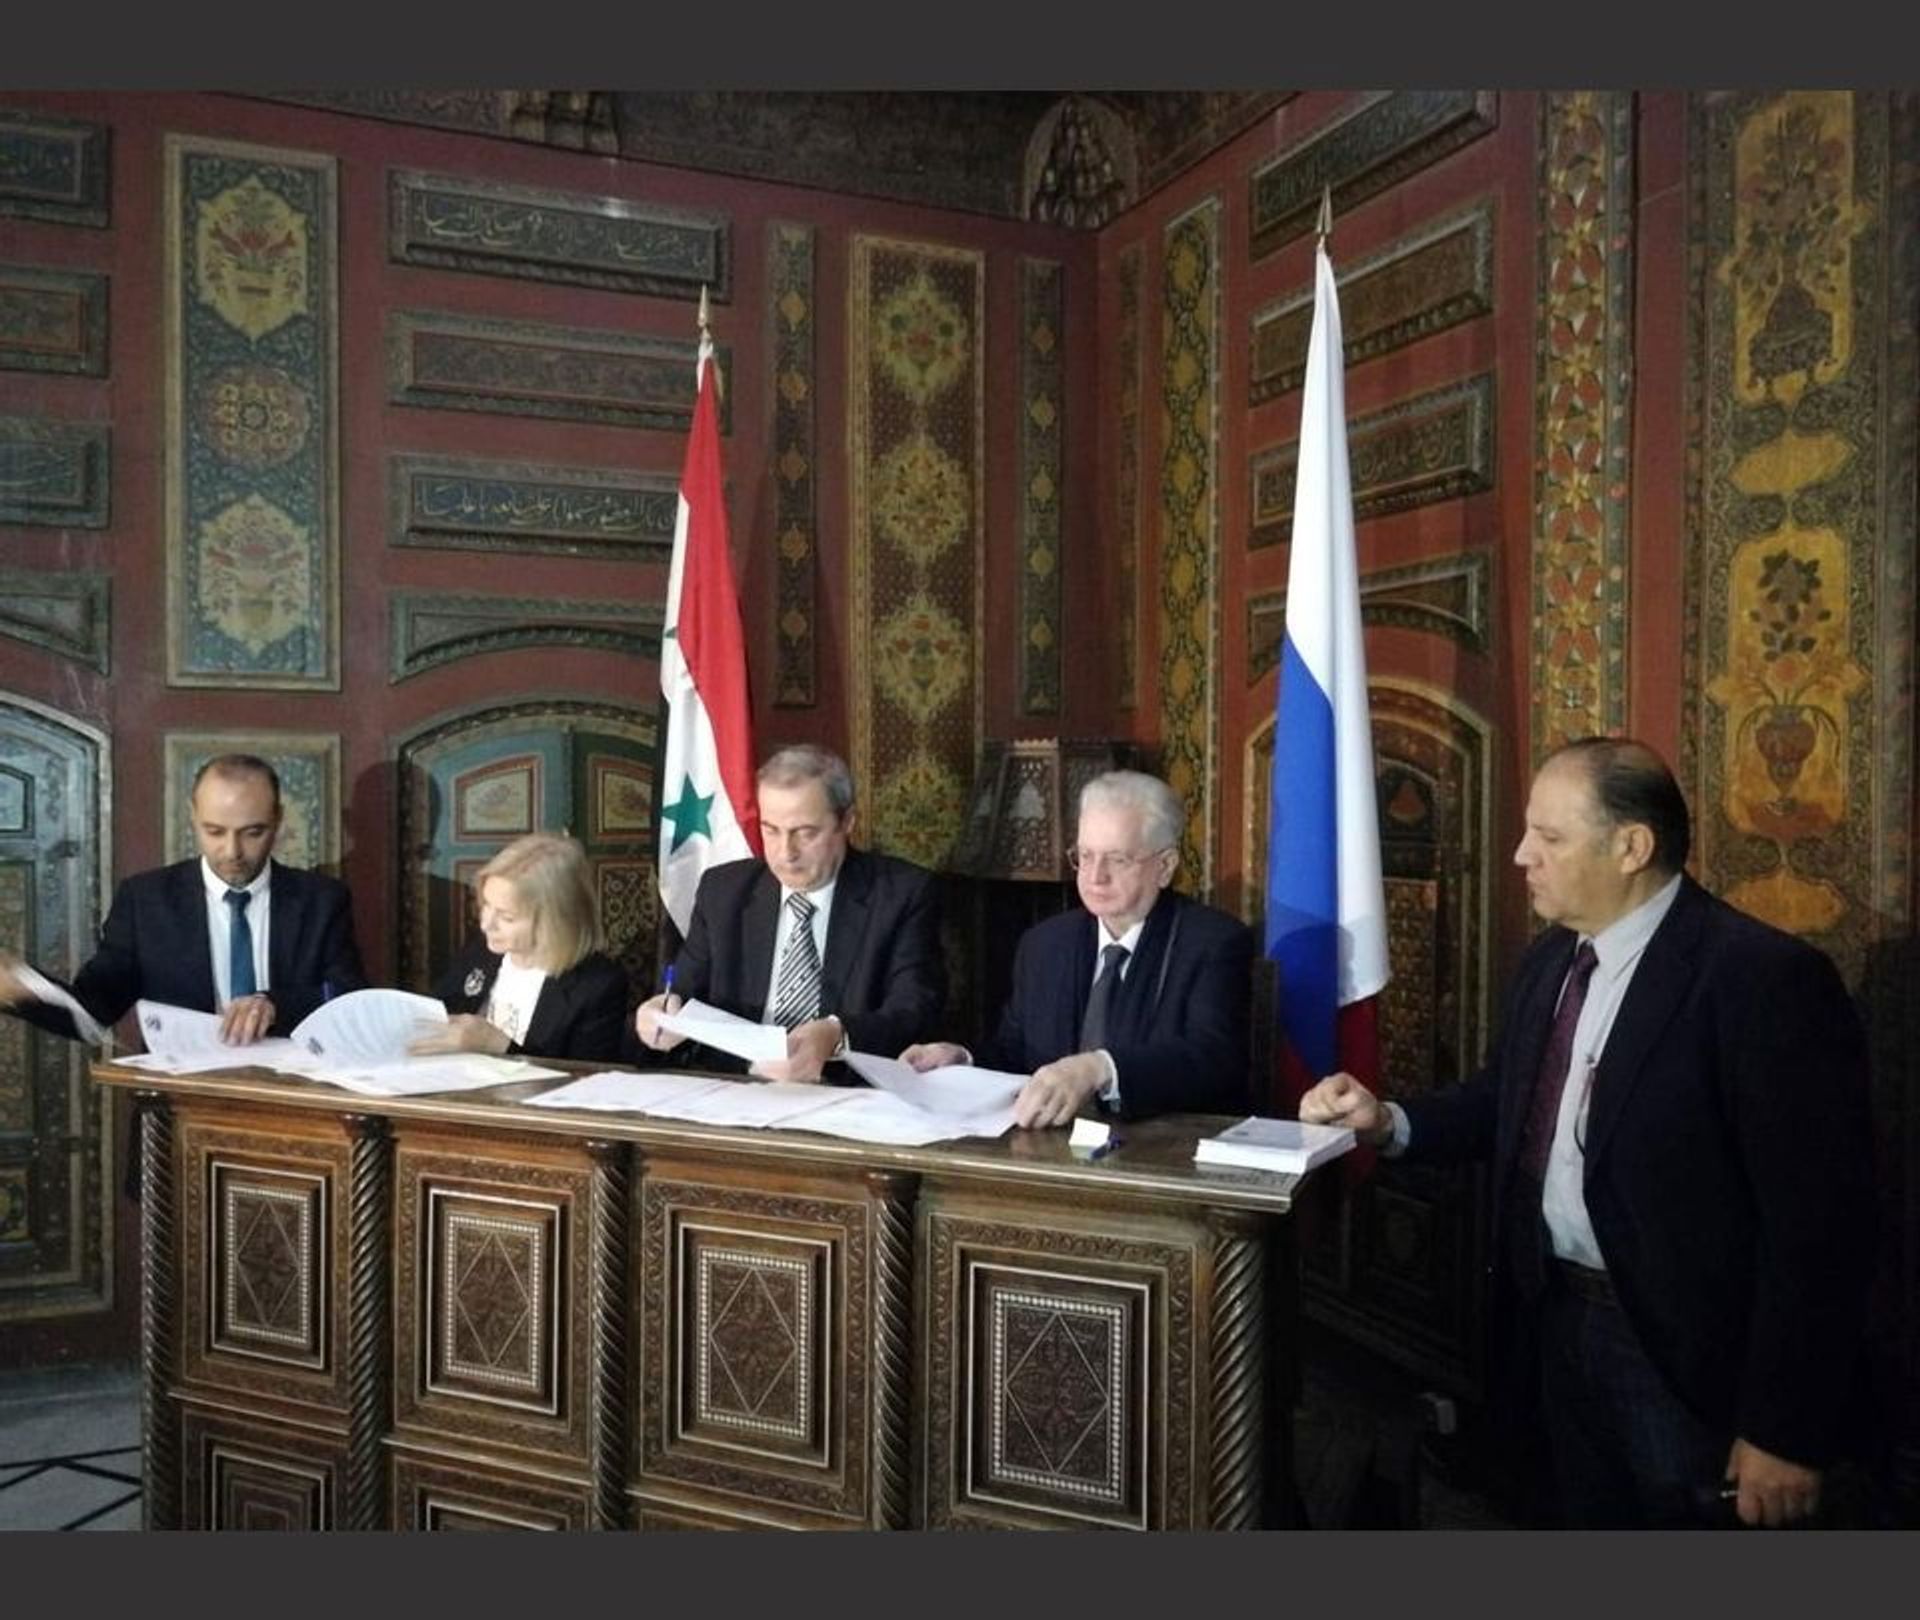 Mahmoud Hammoud et Mikhaïl Piotrovski pendant la signature de l’accord à Damas. © Courtesy du musée de l’Ermitage